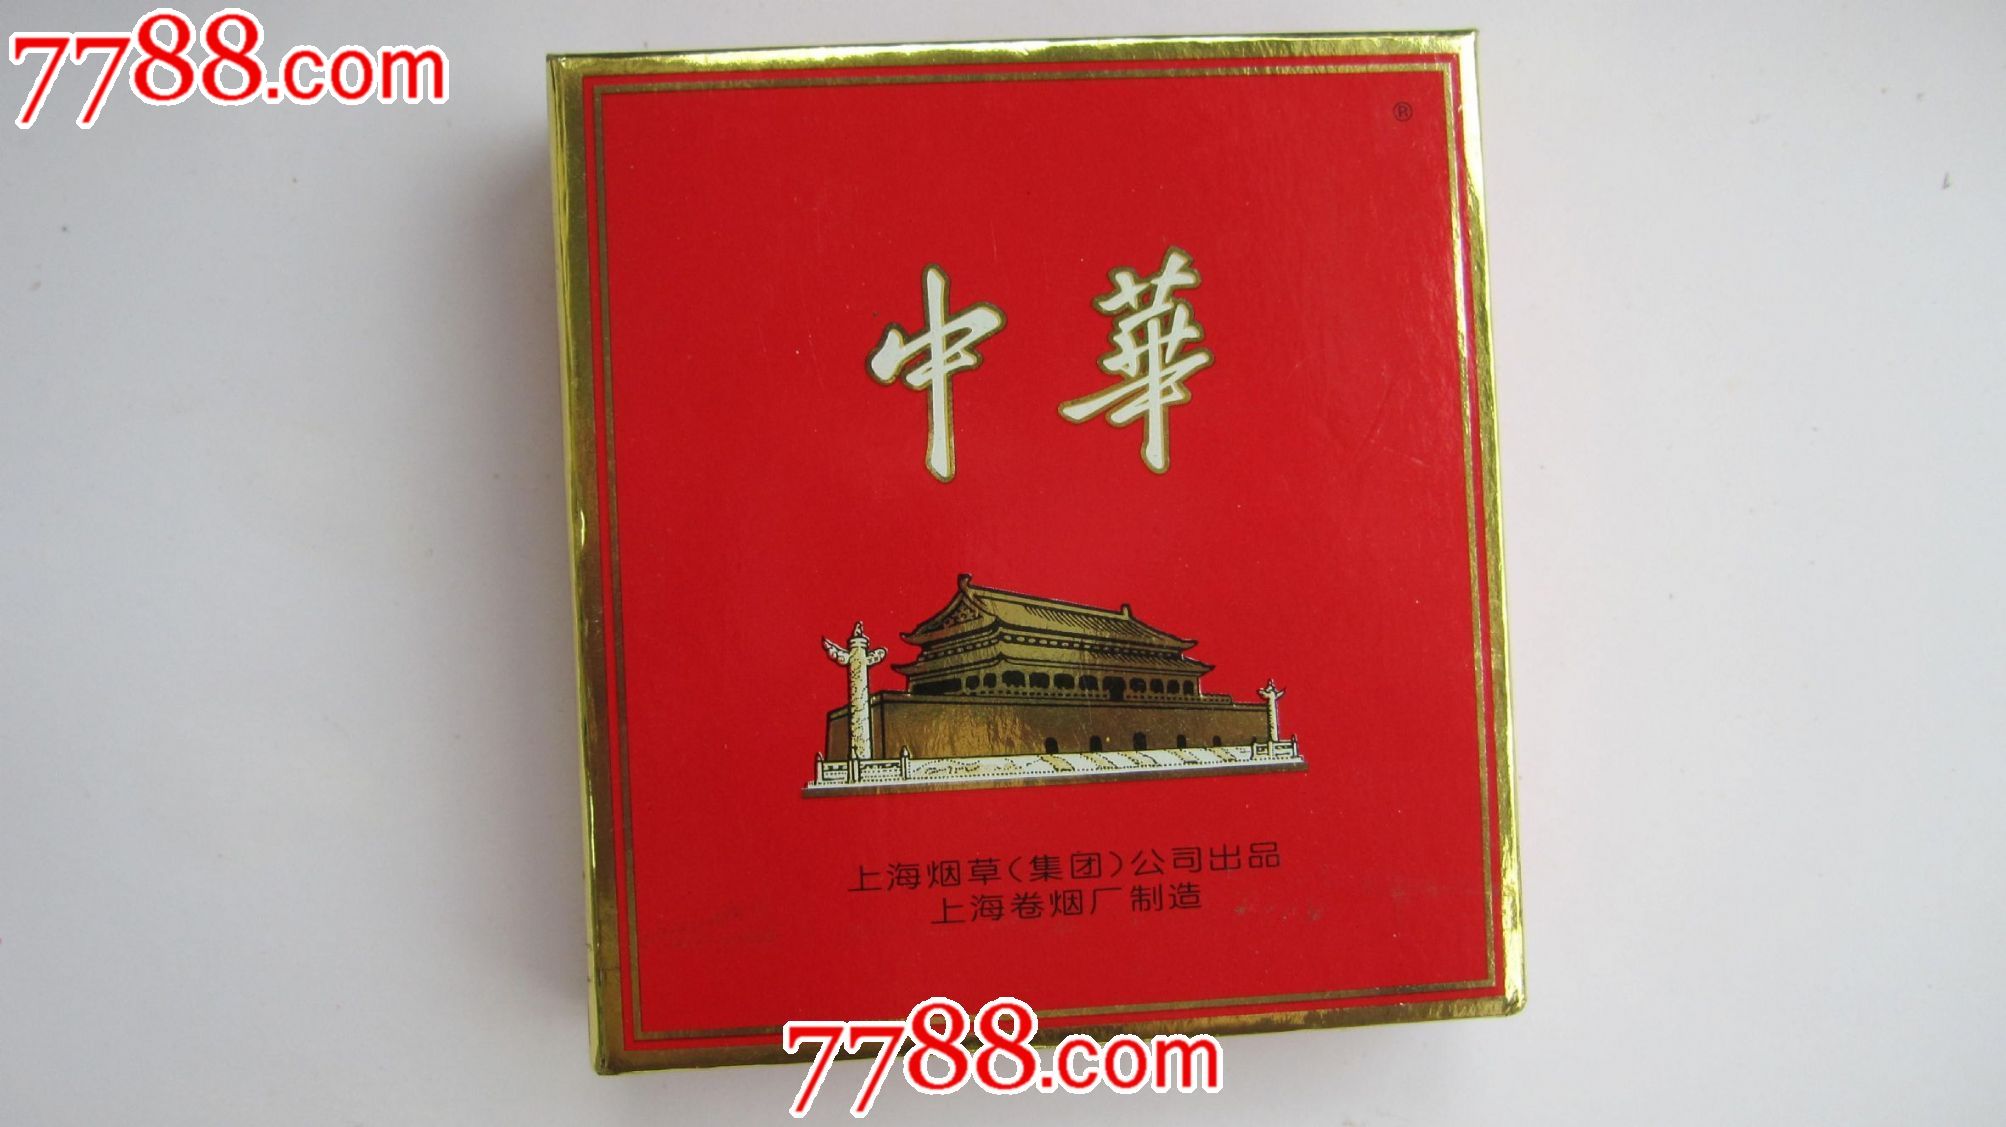 中华--扁盒,烟标\/烟盒,卡标,条码标,正常流通标,